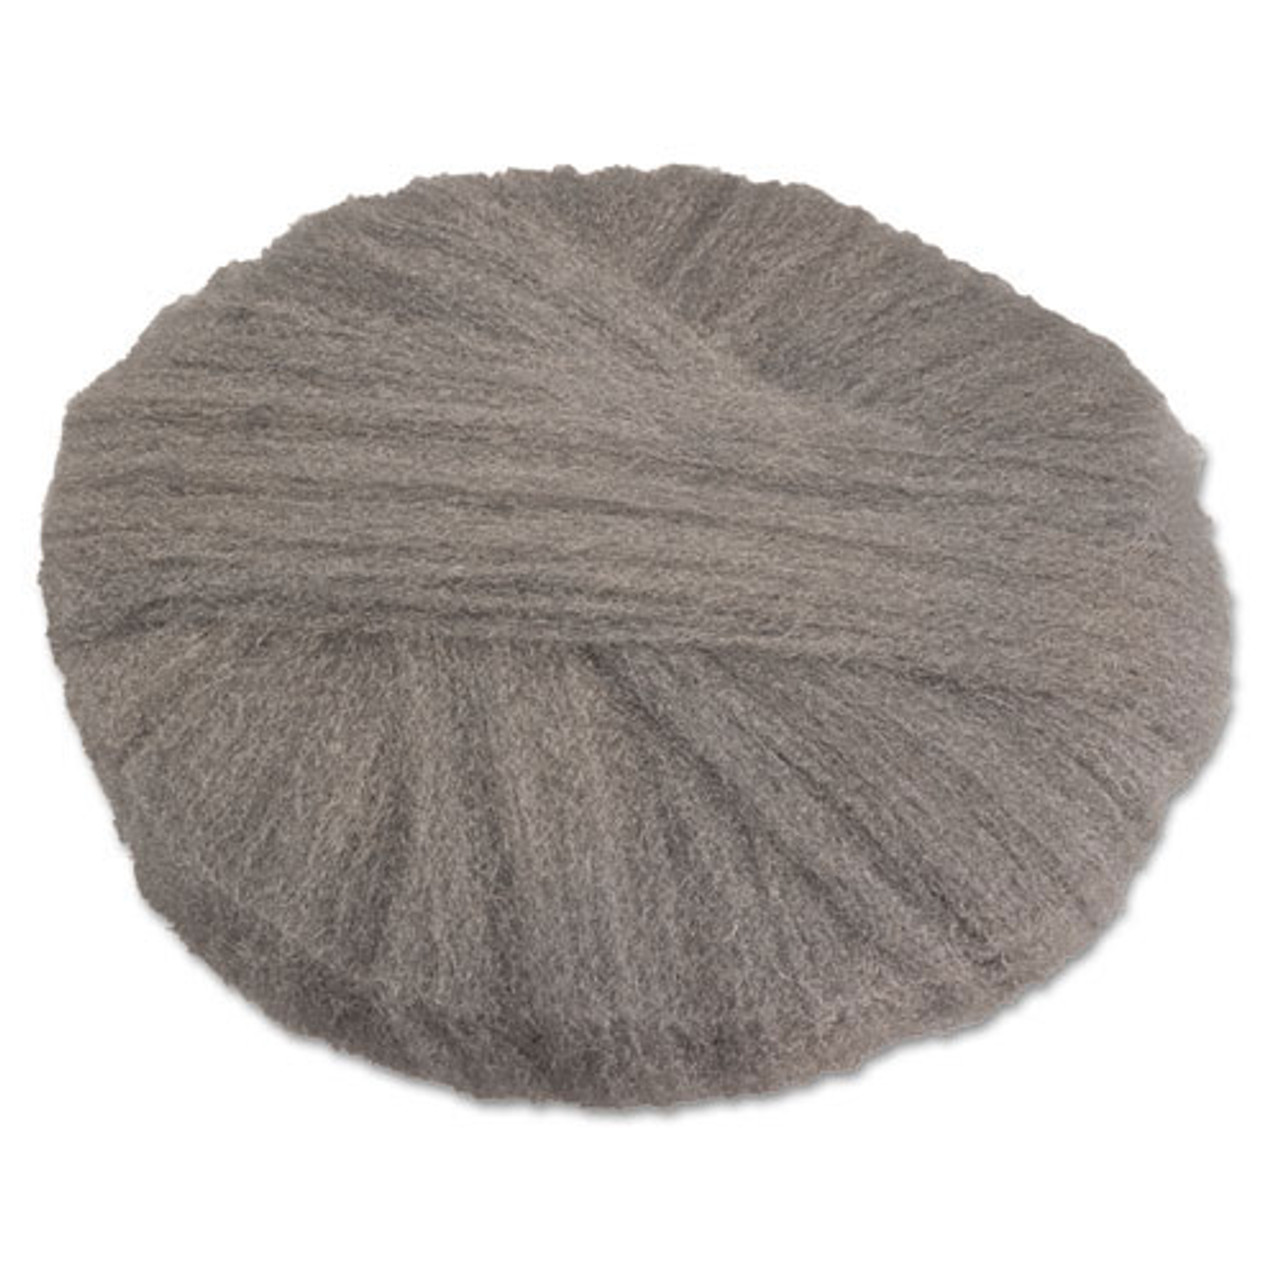 Steel wool floor scrubber pads 17 inch radial